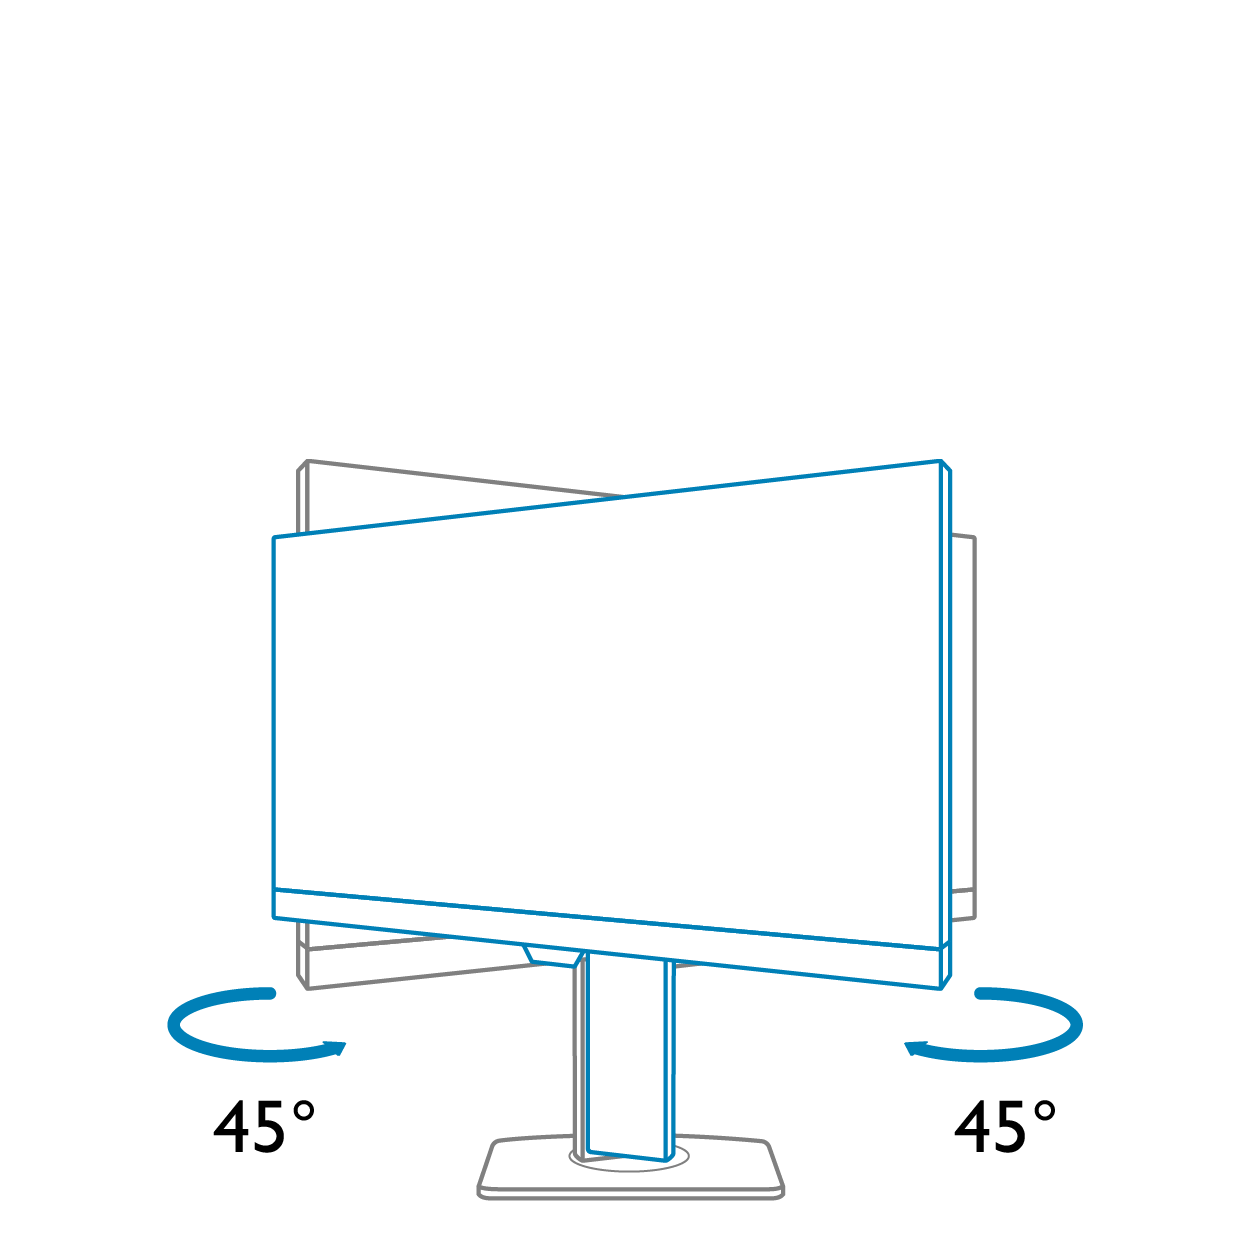 Benq GW2785TC Ergonomický design umožňující pohodlné nastavení polohy obrazovky Snadné přizpůsobení monitoru prostřednictvím nastavení výšky, naklonění, otočení na výšku a natočení zvyšuje flexibilitu při práci a učení a přispívá k pohodlnému uživatelskému prostředí.